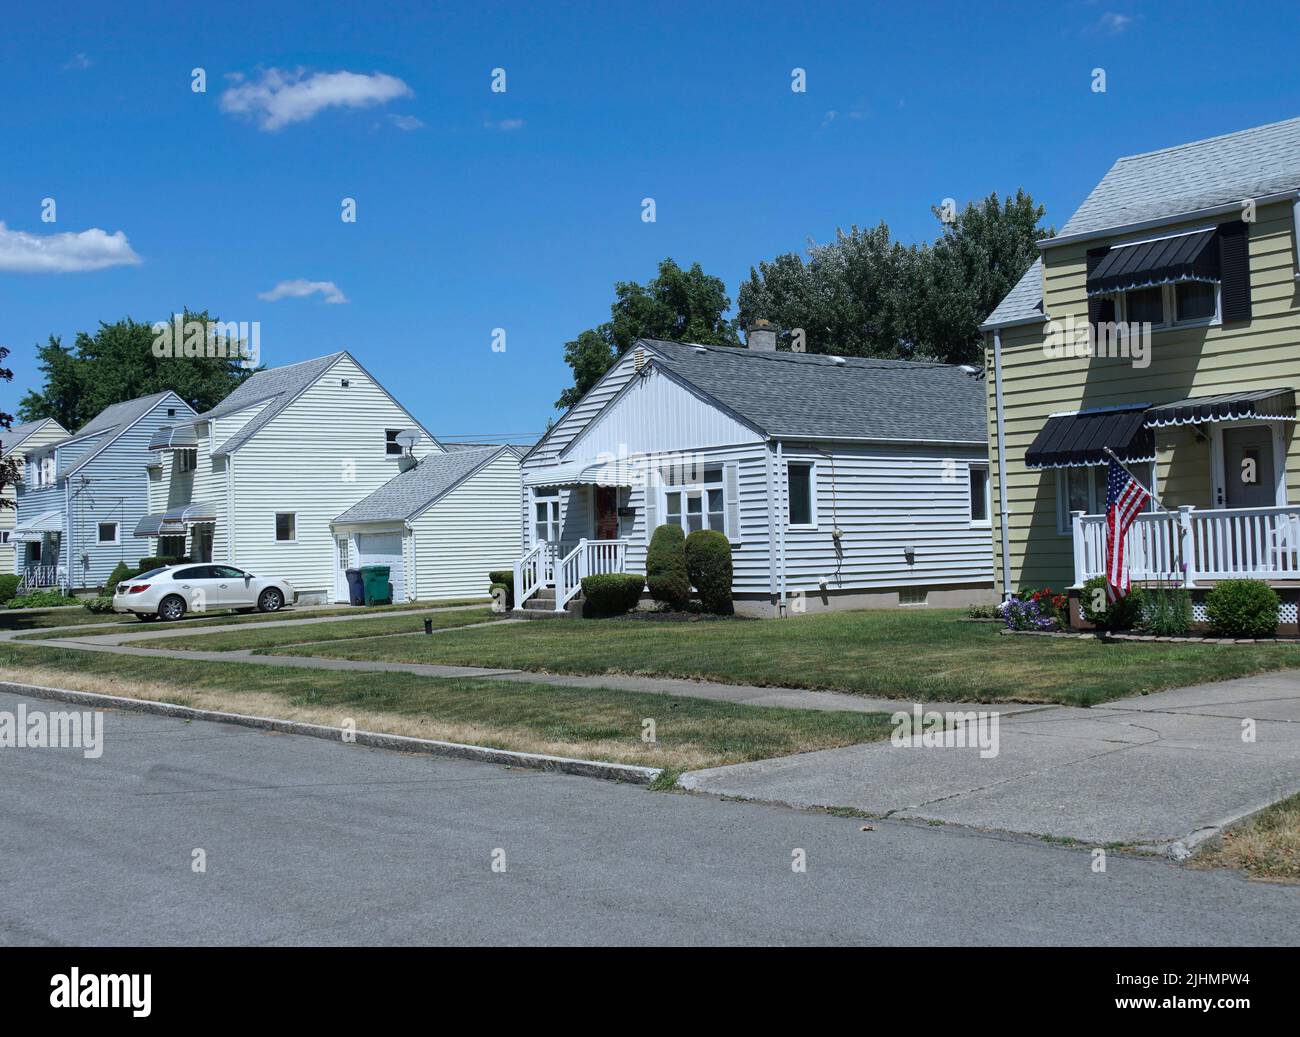 Rue résidentielle suburbaine américaine avec de modestes maisons en panneaux de clopboard Banque D'Images